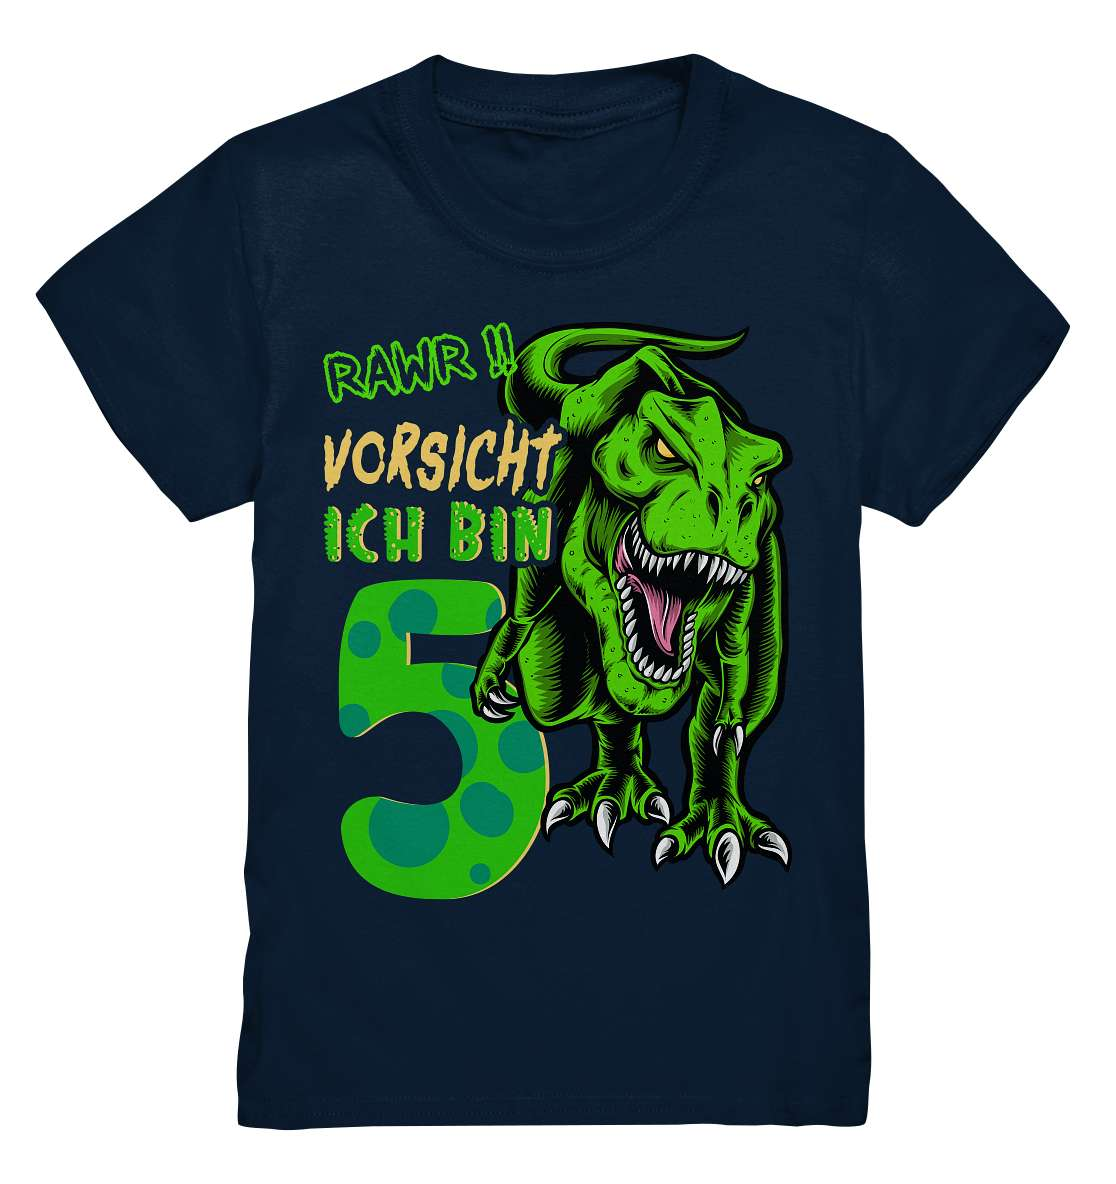 5. Kinder Geburtstag - T-REX Dinosaurier - Ich bin 5 Jahre - Geschenk - Kids Premium Shirt